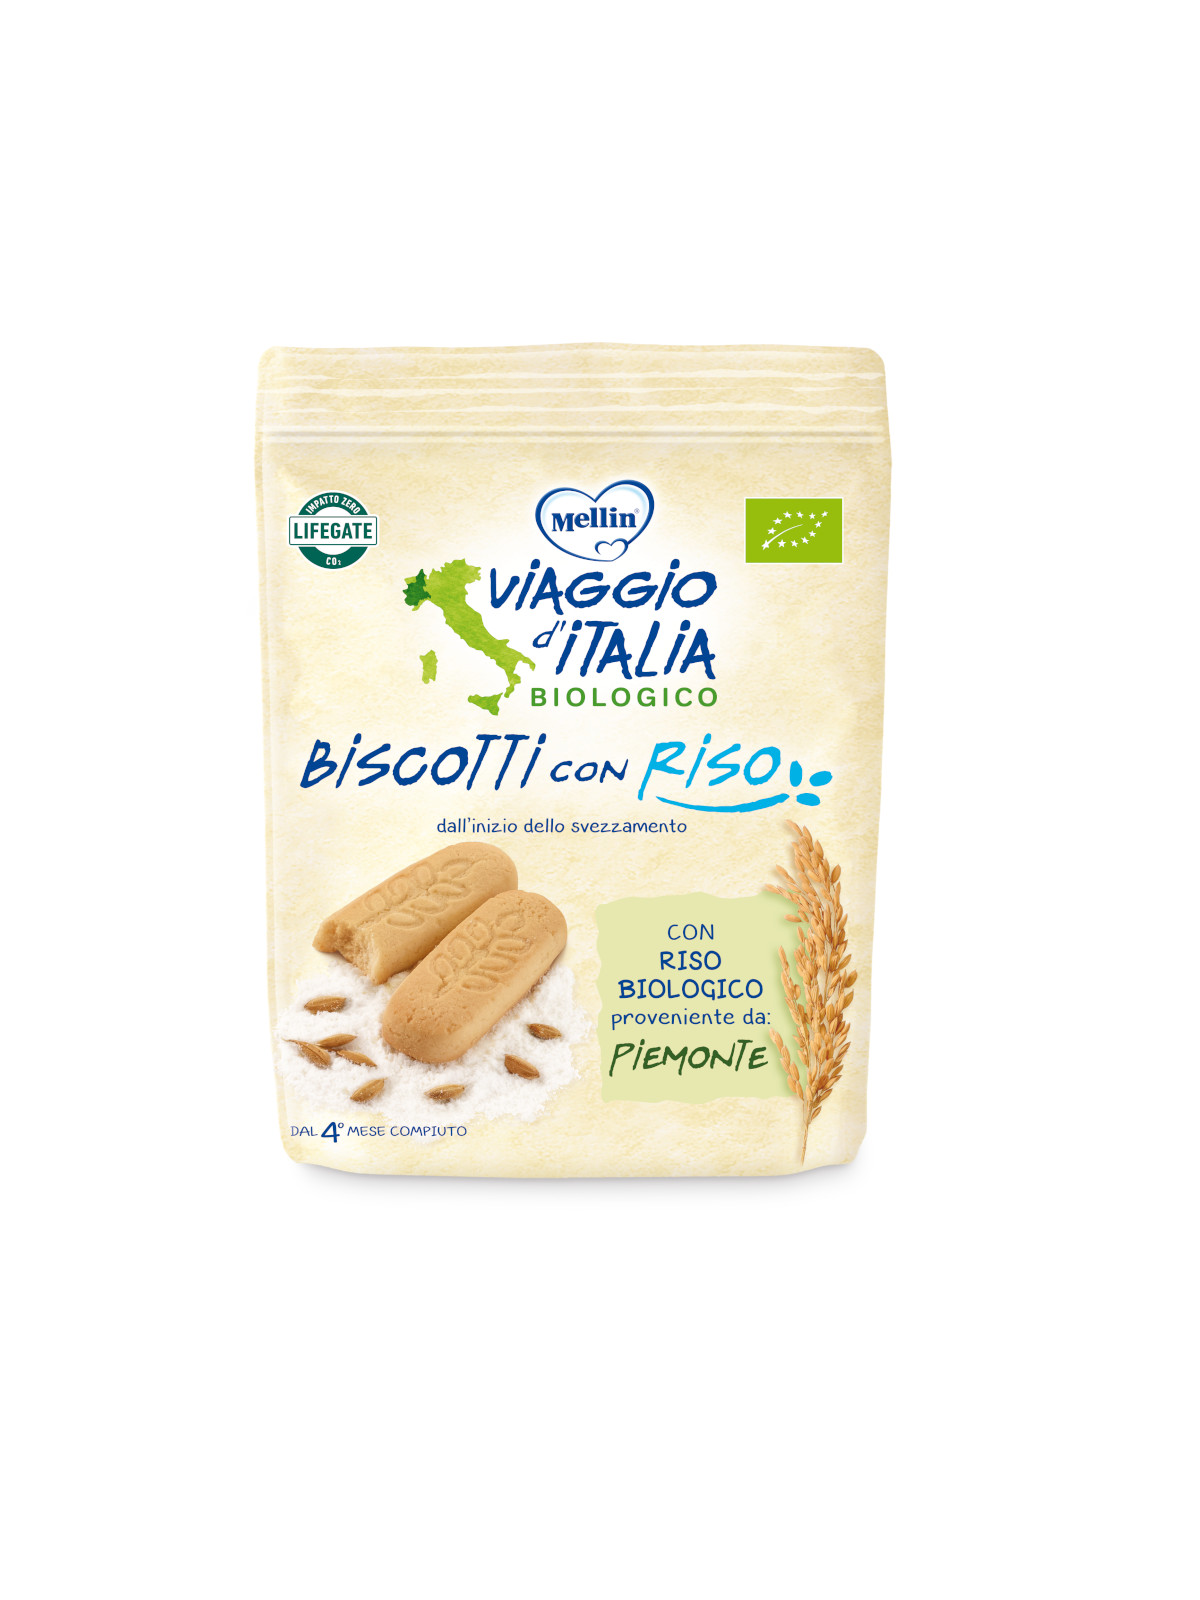 Mellin - bio biscotto riso 150 gr - Viaggio d'italia